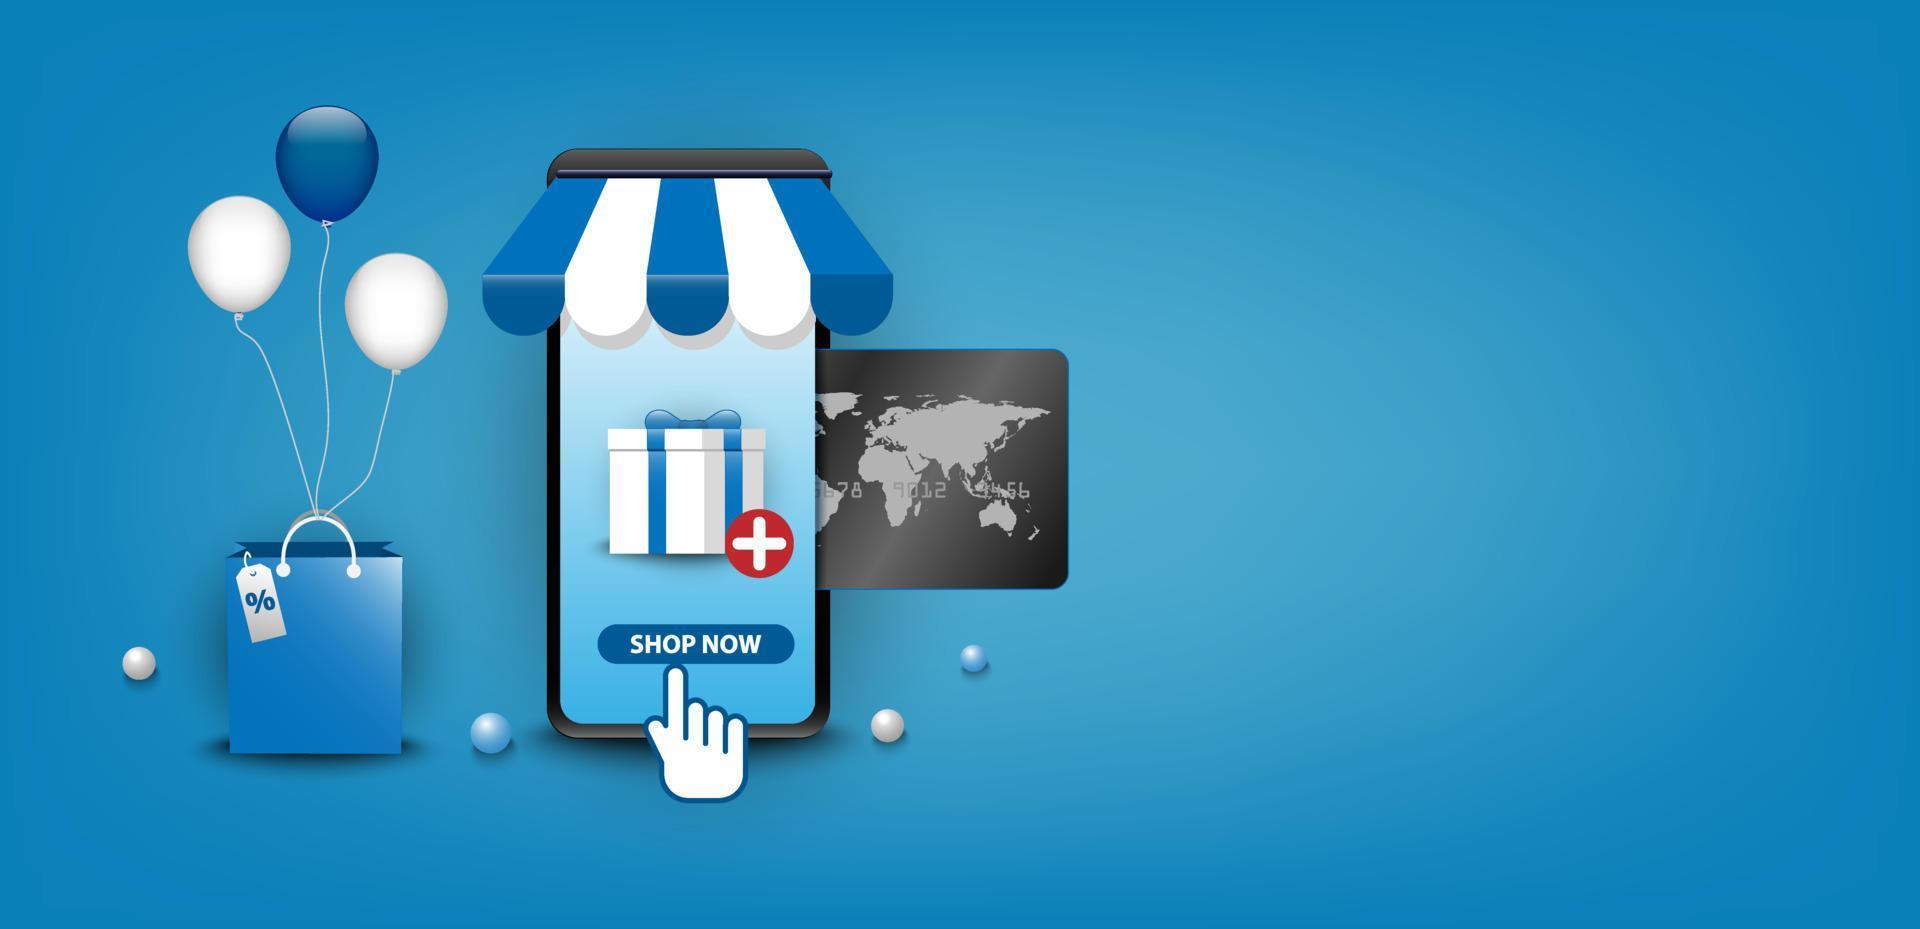 E-handel. digital teknik m-handel på smartphone applikationsbutik. mobil, sociala medier, kreditkort, presentförpackning, ballong, väska. blått grafiskt koncept. vektor illustratör.